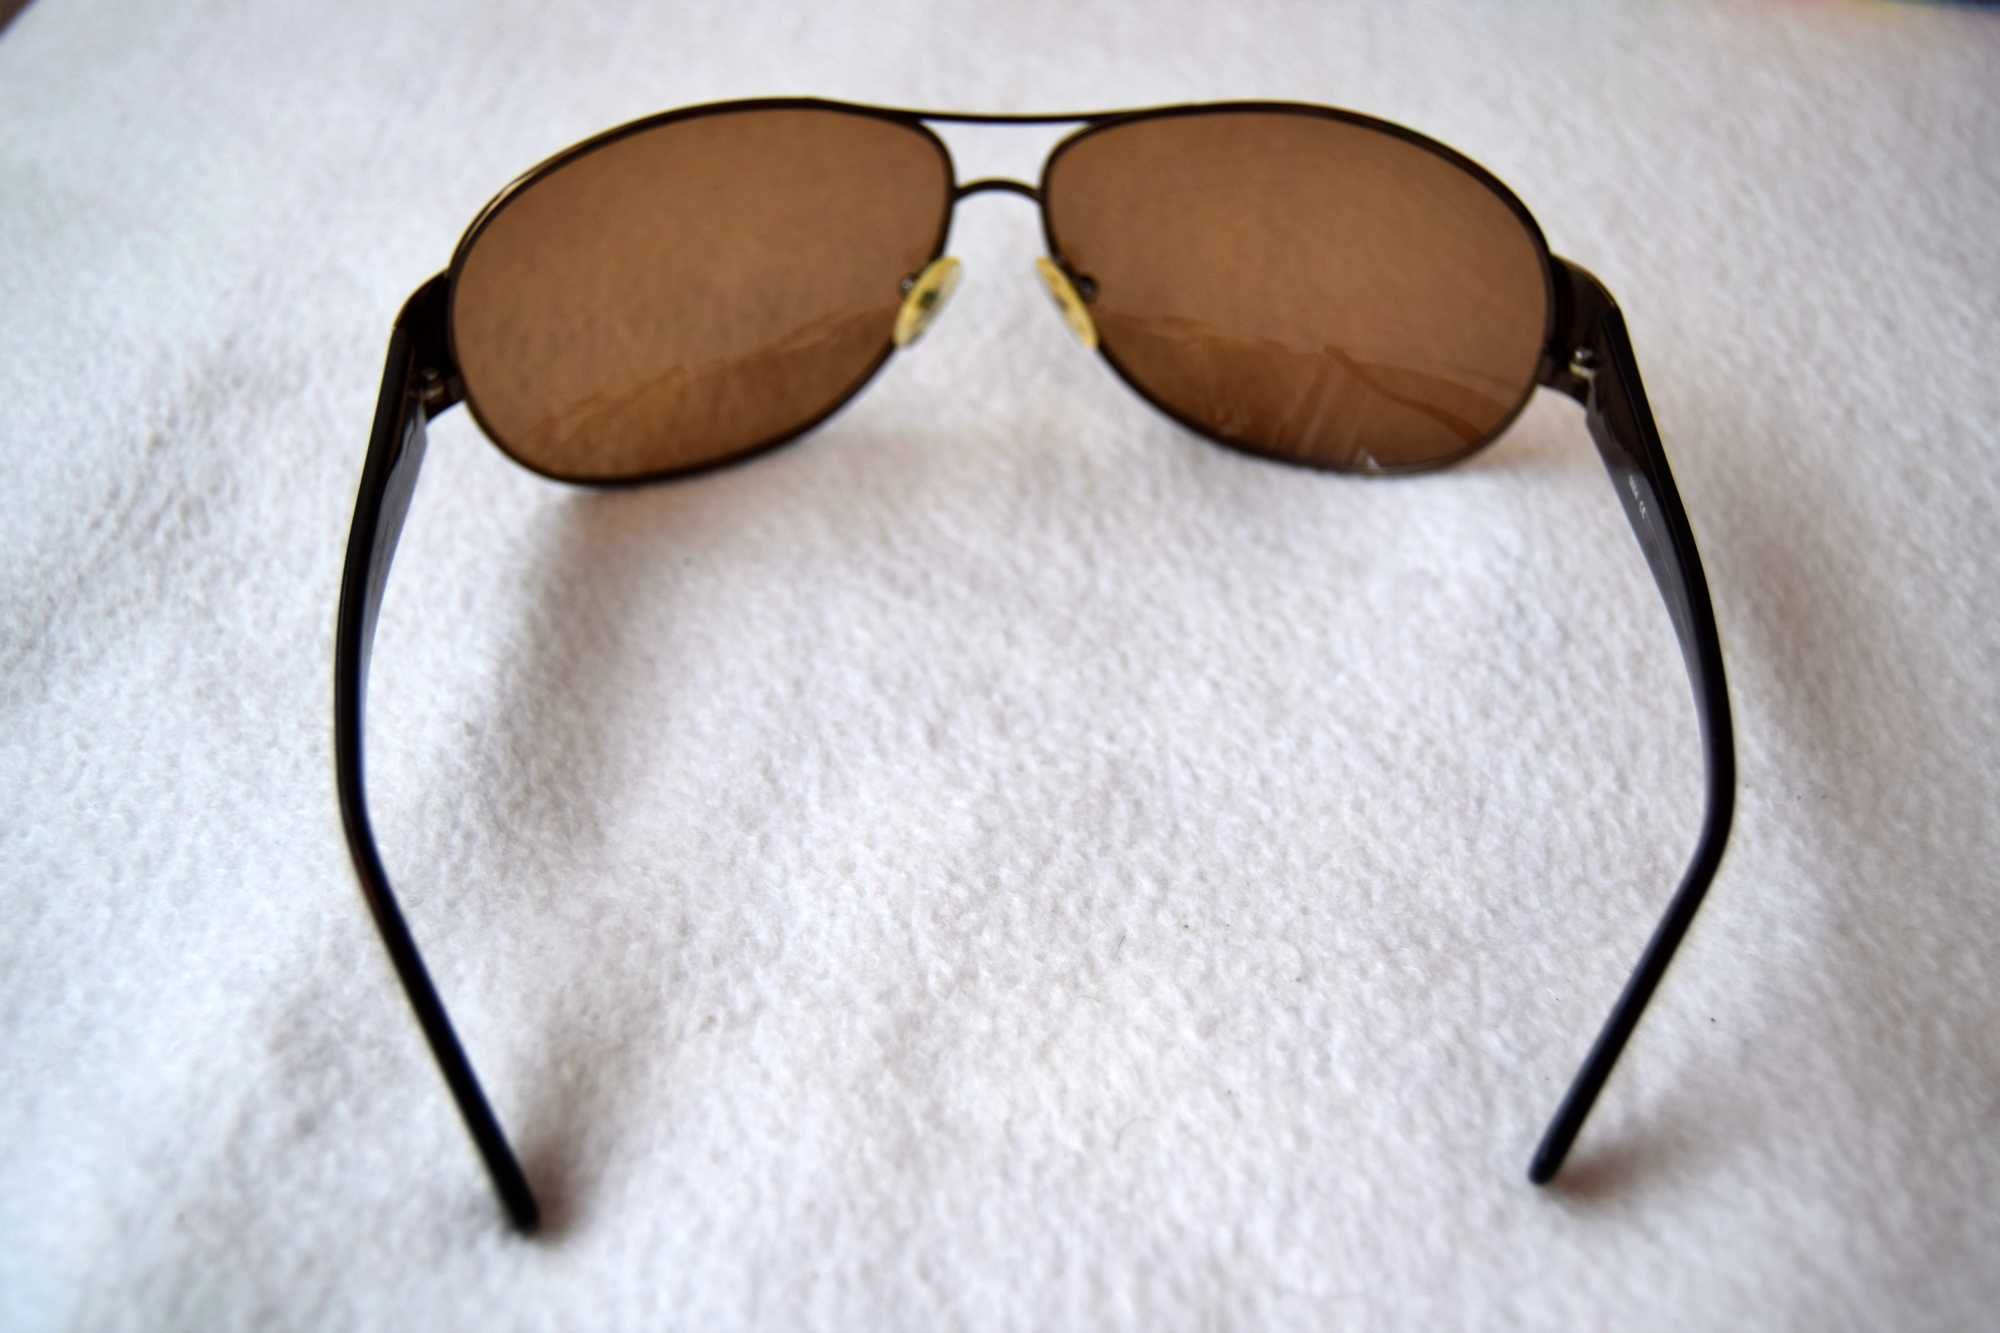 Óculos de sol Tiffosi